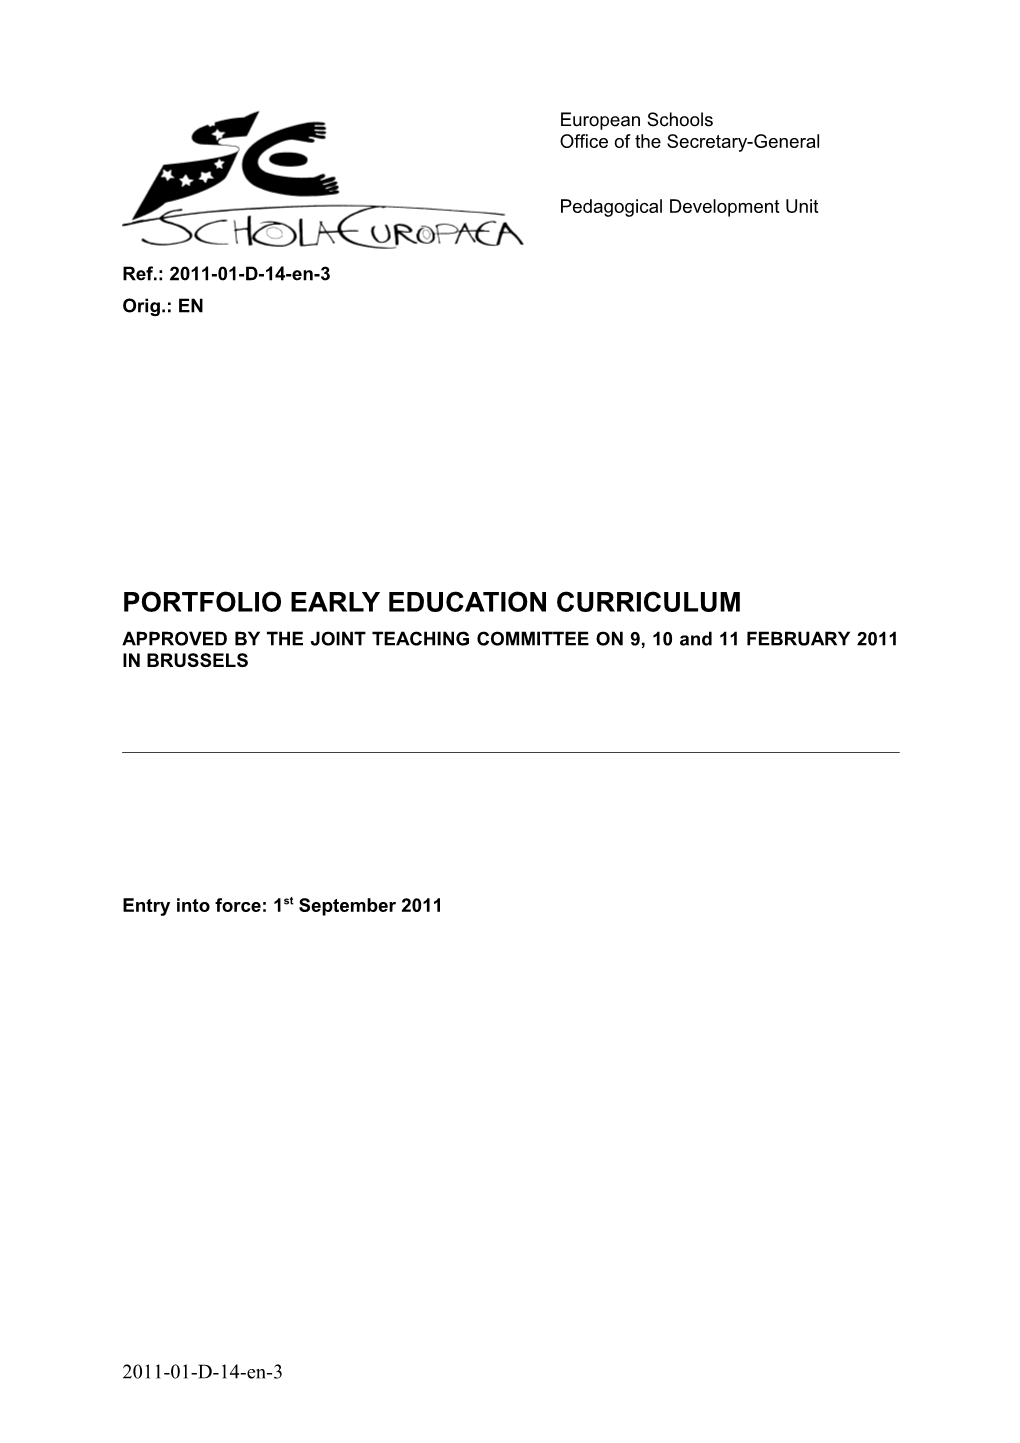 Portfolio Early Education Curriculum